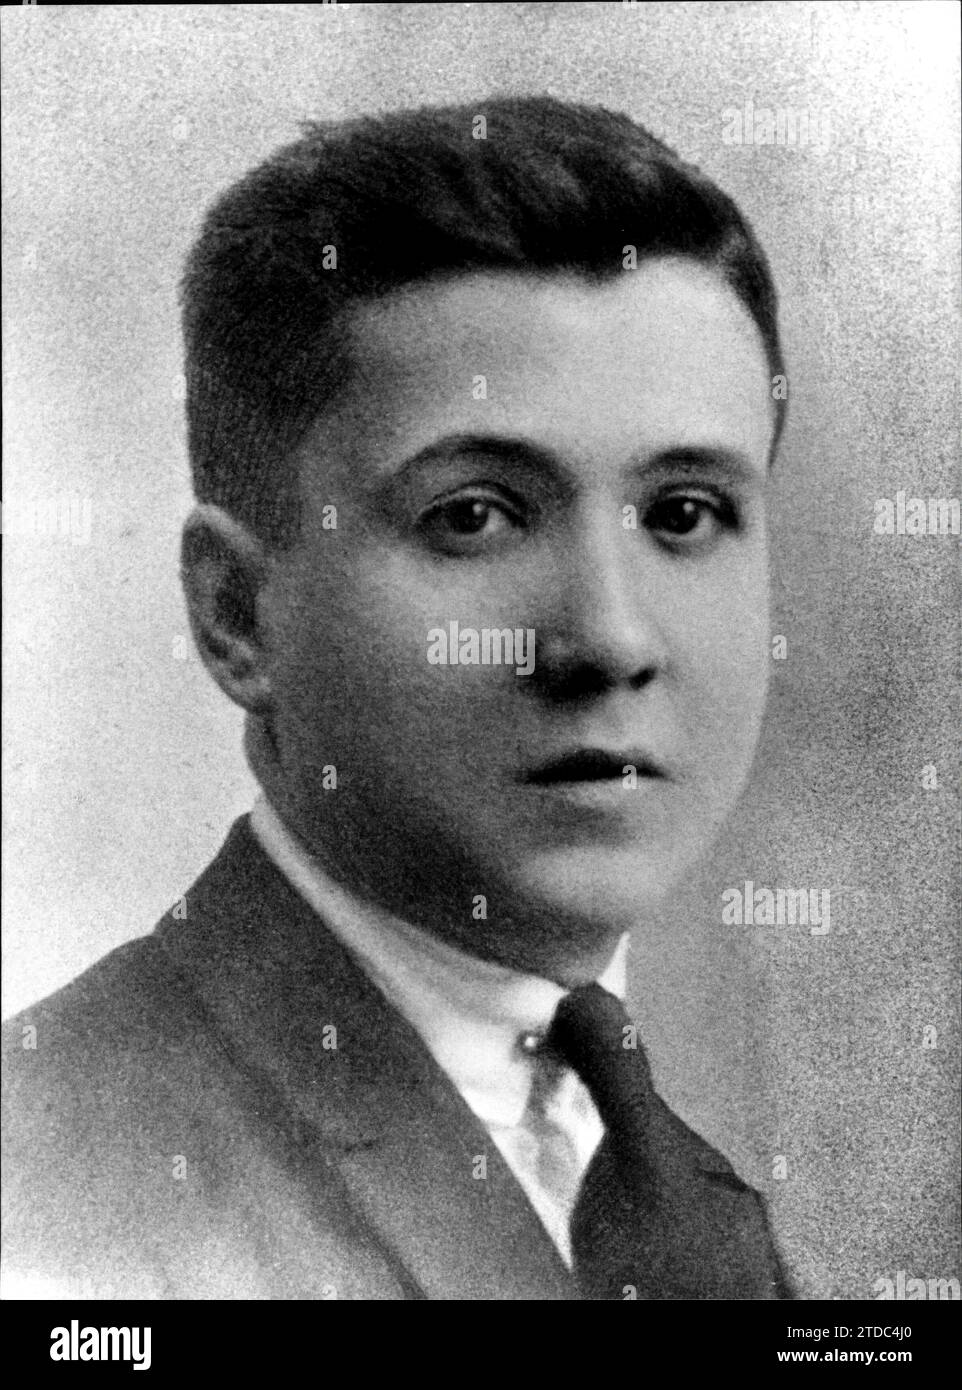 12/31/1916. José María Escrivá de Balaguer, Gründer des Opus Dei, im Alter von 15 Jahren. Quelle: Album/Archivo ABC Stockfoto